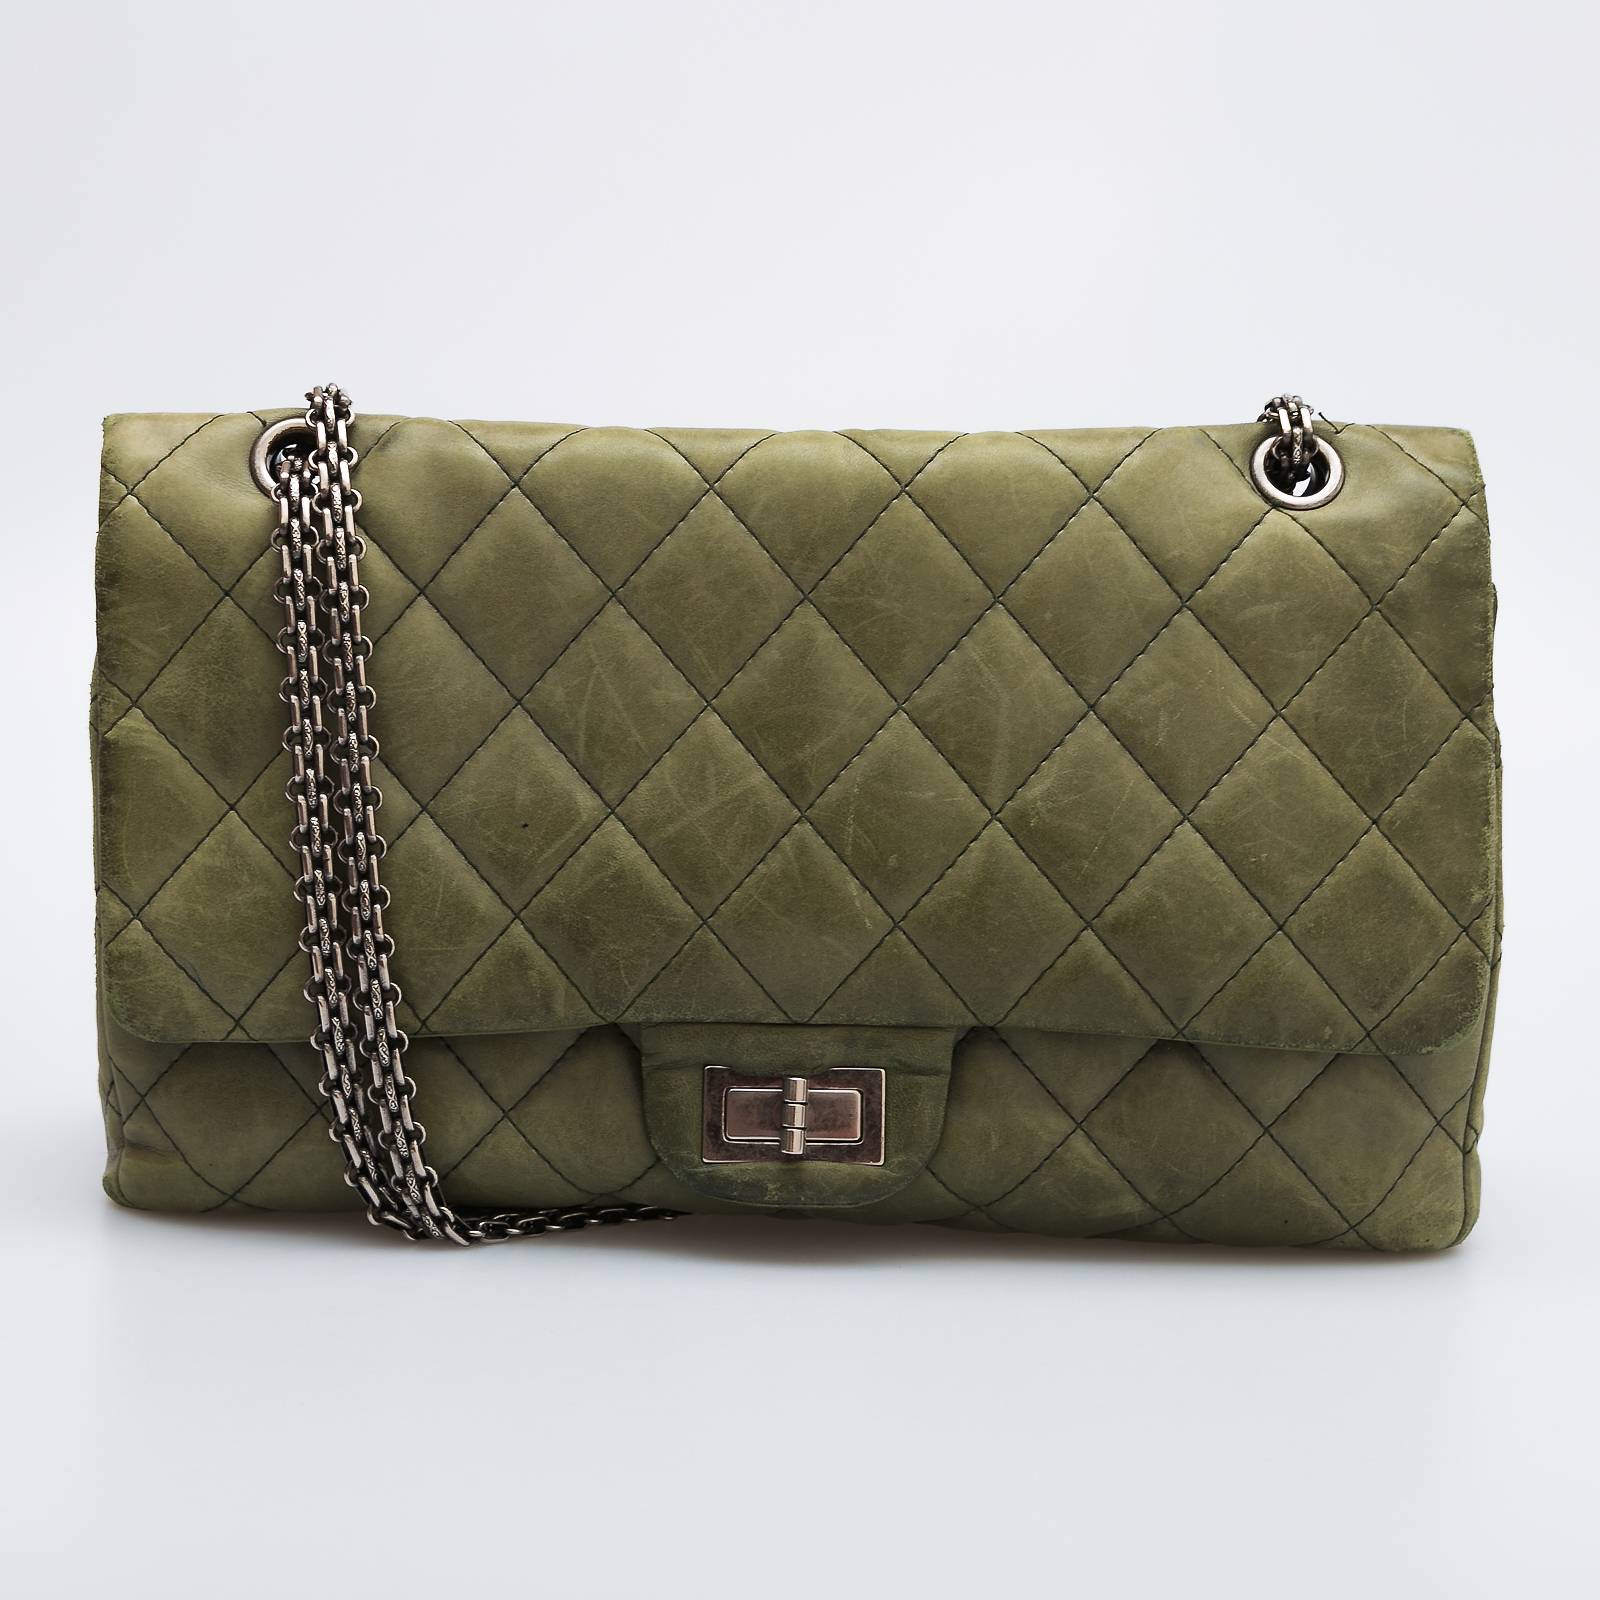 Женские сумки Chanel: купить сумочку Шанель на Клубок (ранее Клумба)